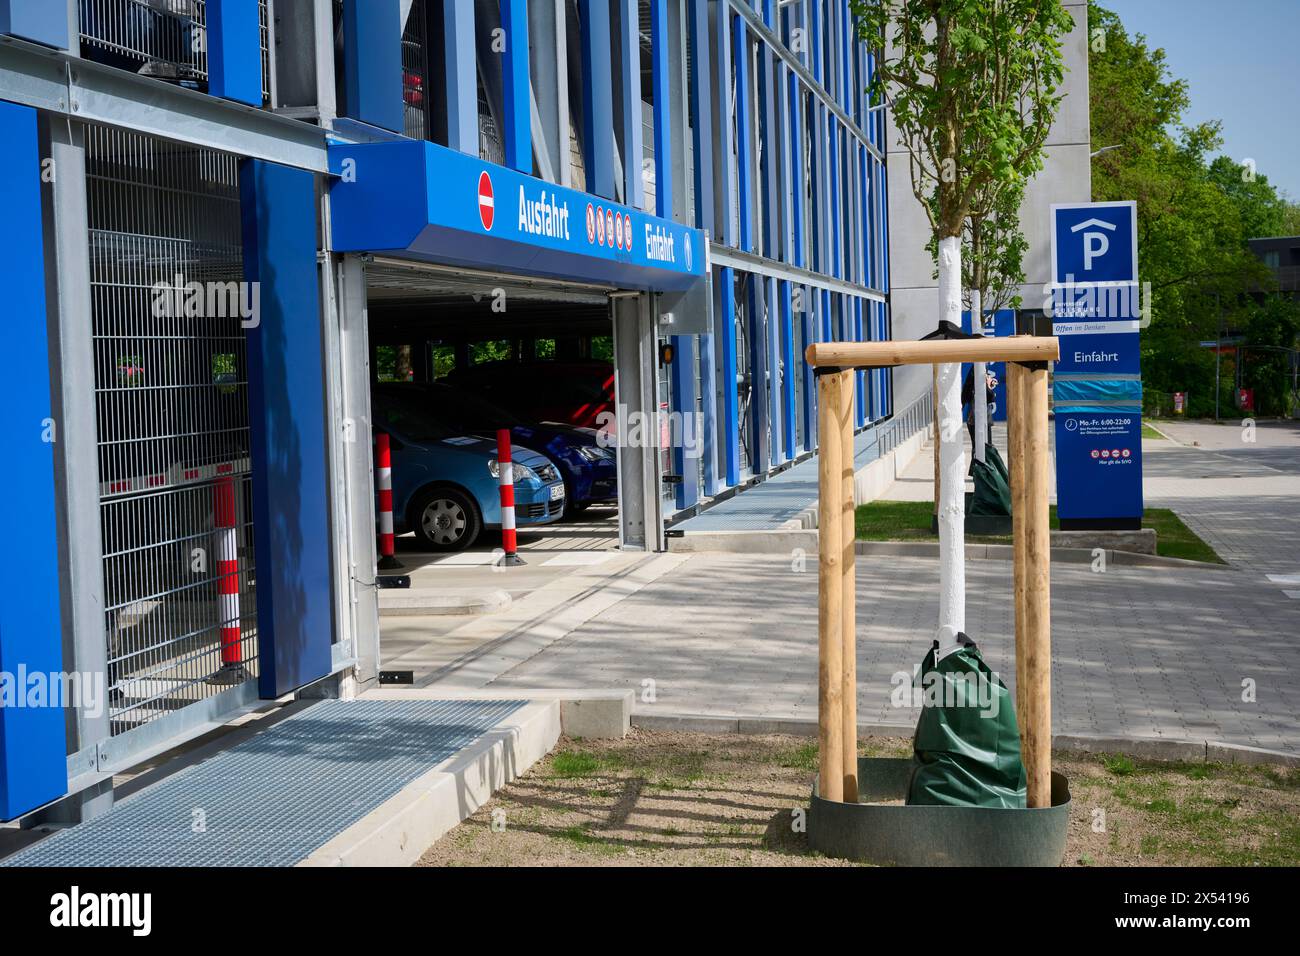 Die Essener Universität, Duisburg / Essen, Hat ein neues Parkhaus. Veröffentlichungen nur für redaktionelle Zwecke. Foto: IMAGO/FotoPrensa Foto Stock